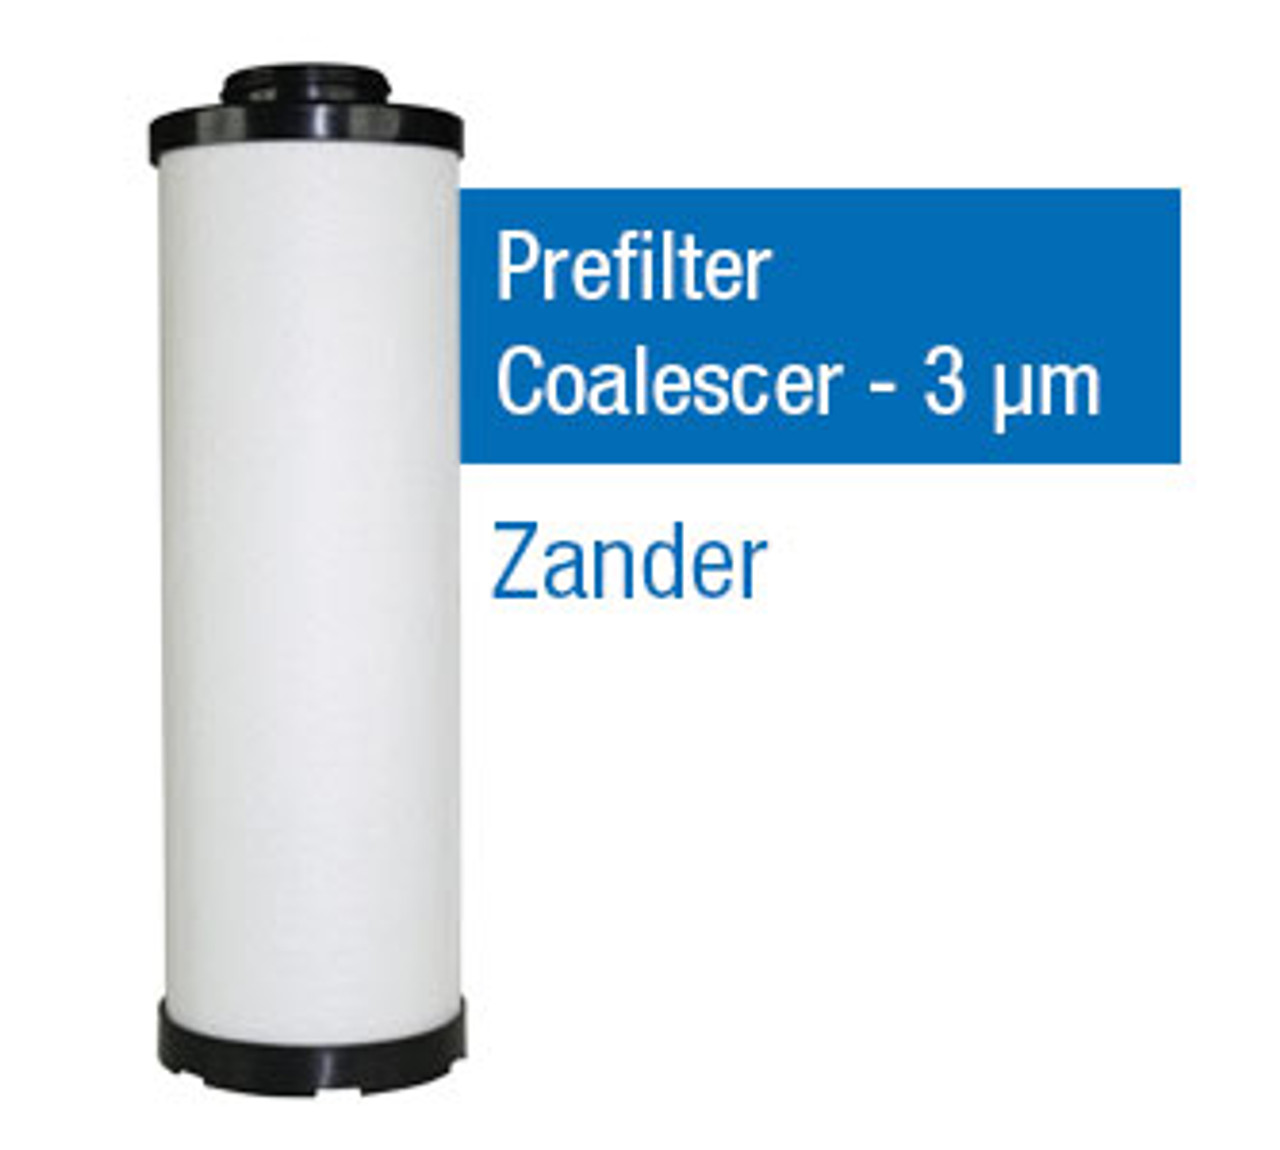 ZA5060P - Grade P - Prefilter Coalescer - 3 um (5060V/G18VD)